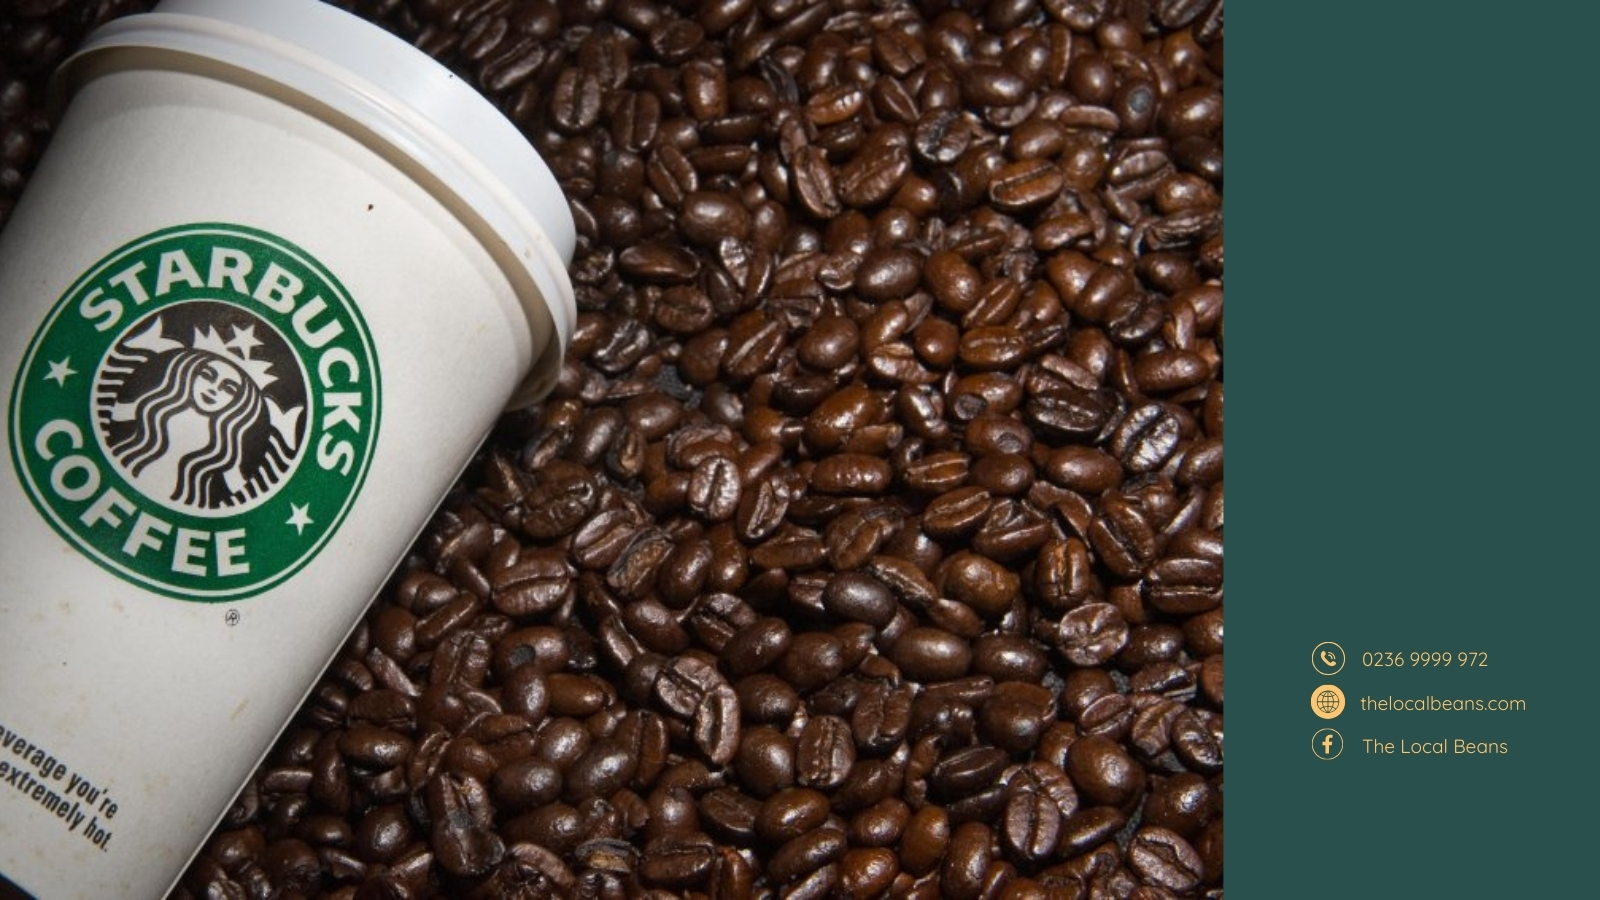 minh hoạ cà phê hạt Starbucks